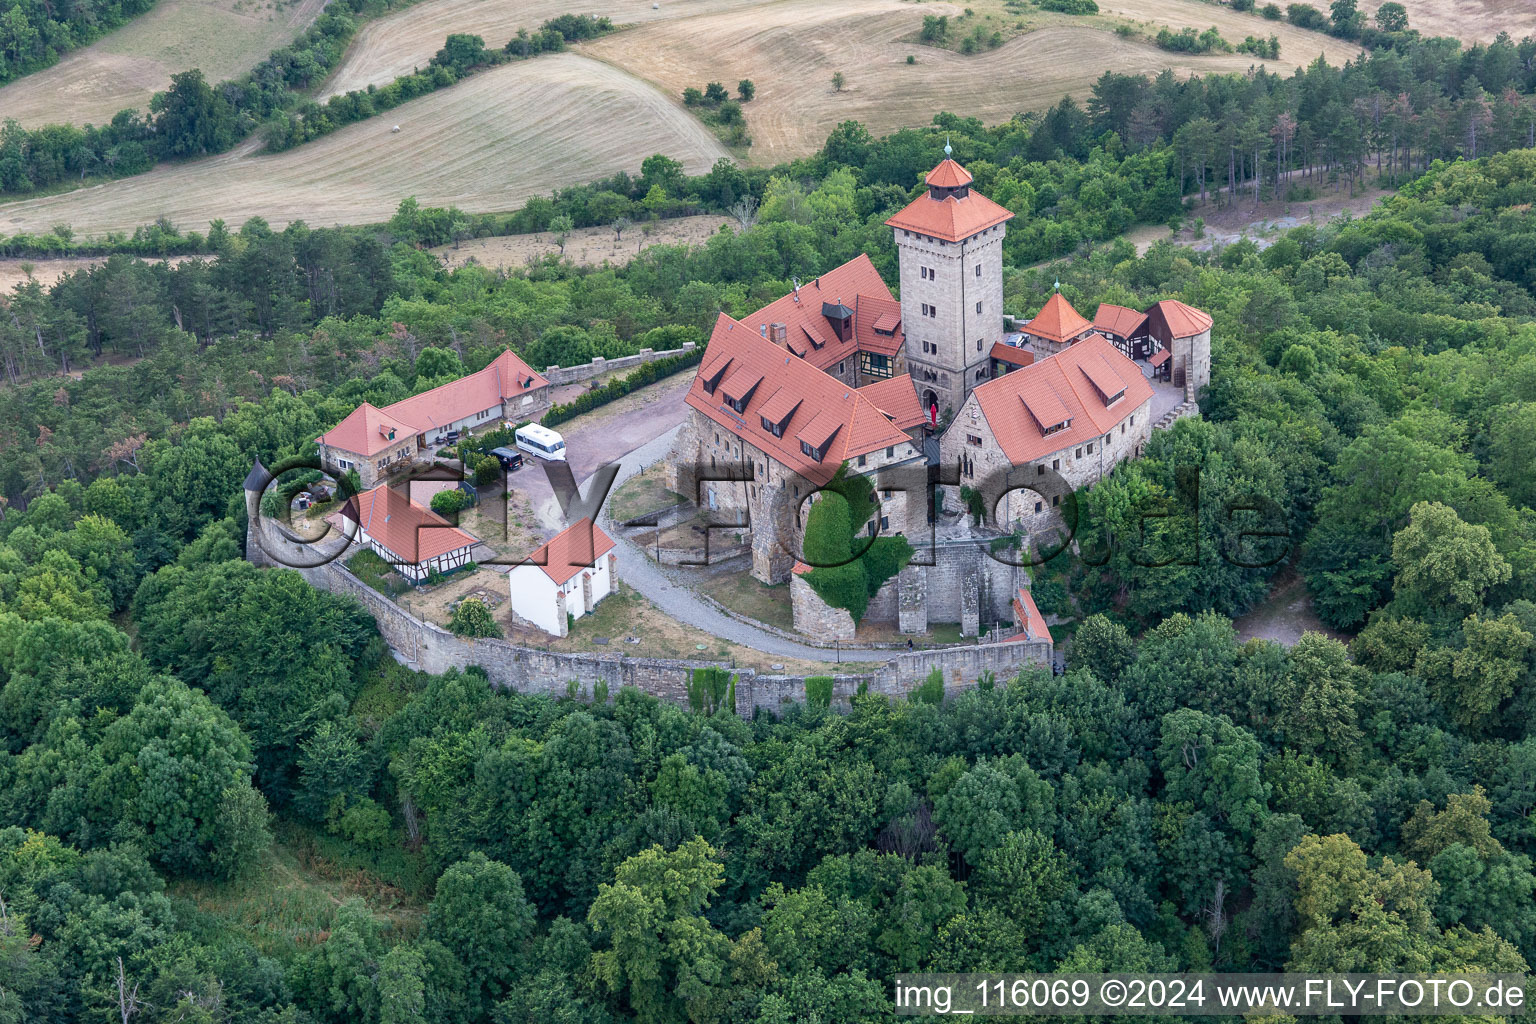 Vue aérienne de Complexe du château de la Veste Wachsenburg à Amt Wachsenburg dans le département Thuringe, Allemagne